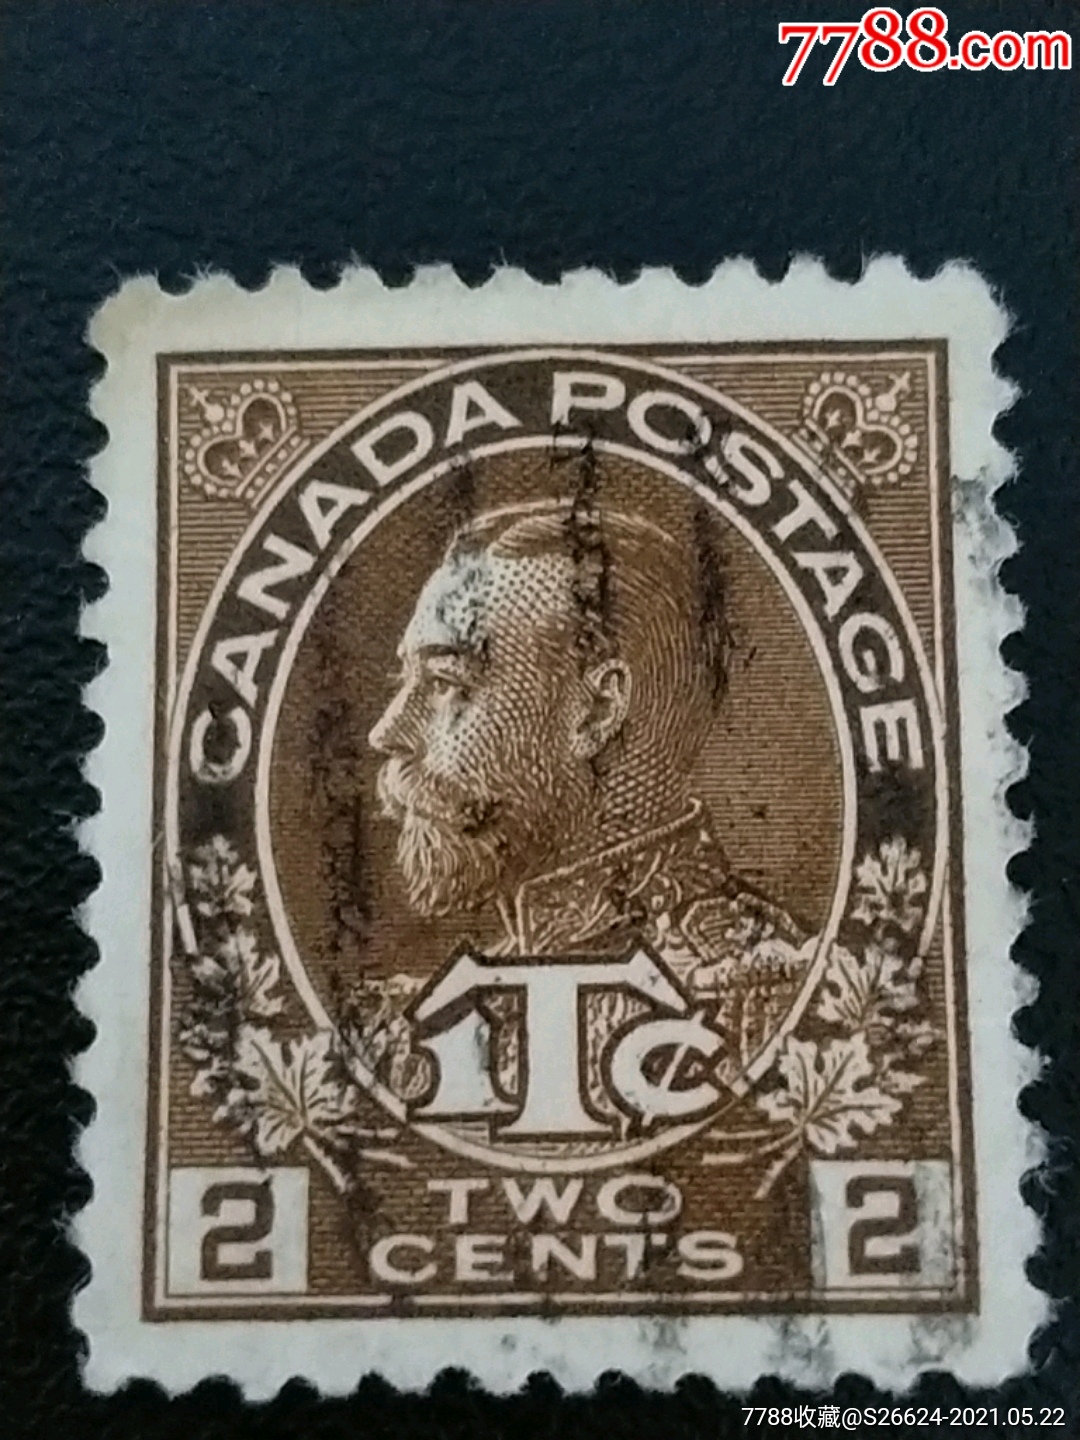 1916年加拿大战争税邮票乔治五世像雕刻版邮票1枚销